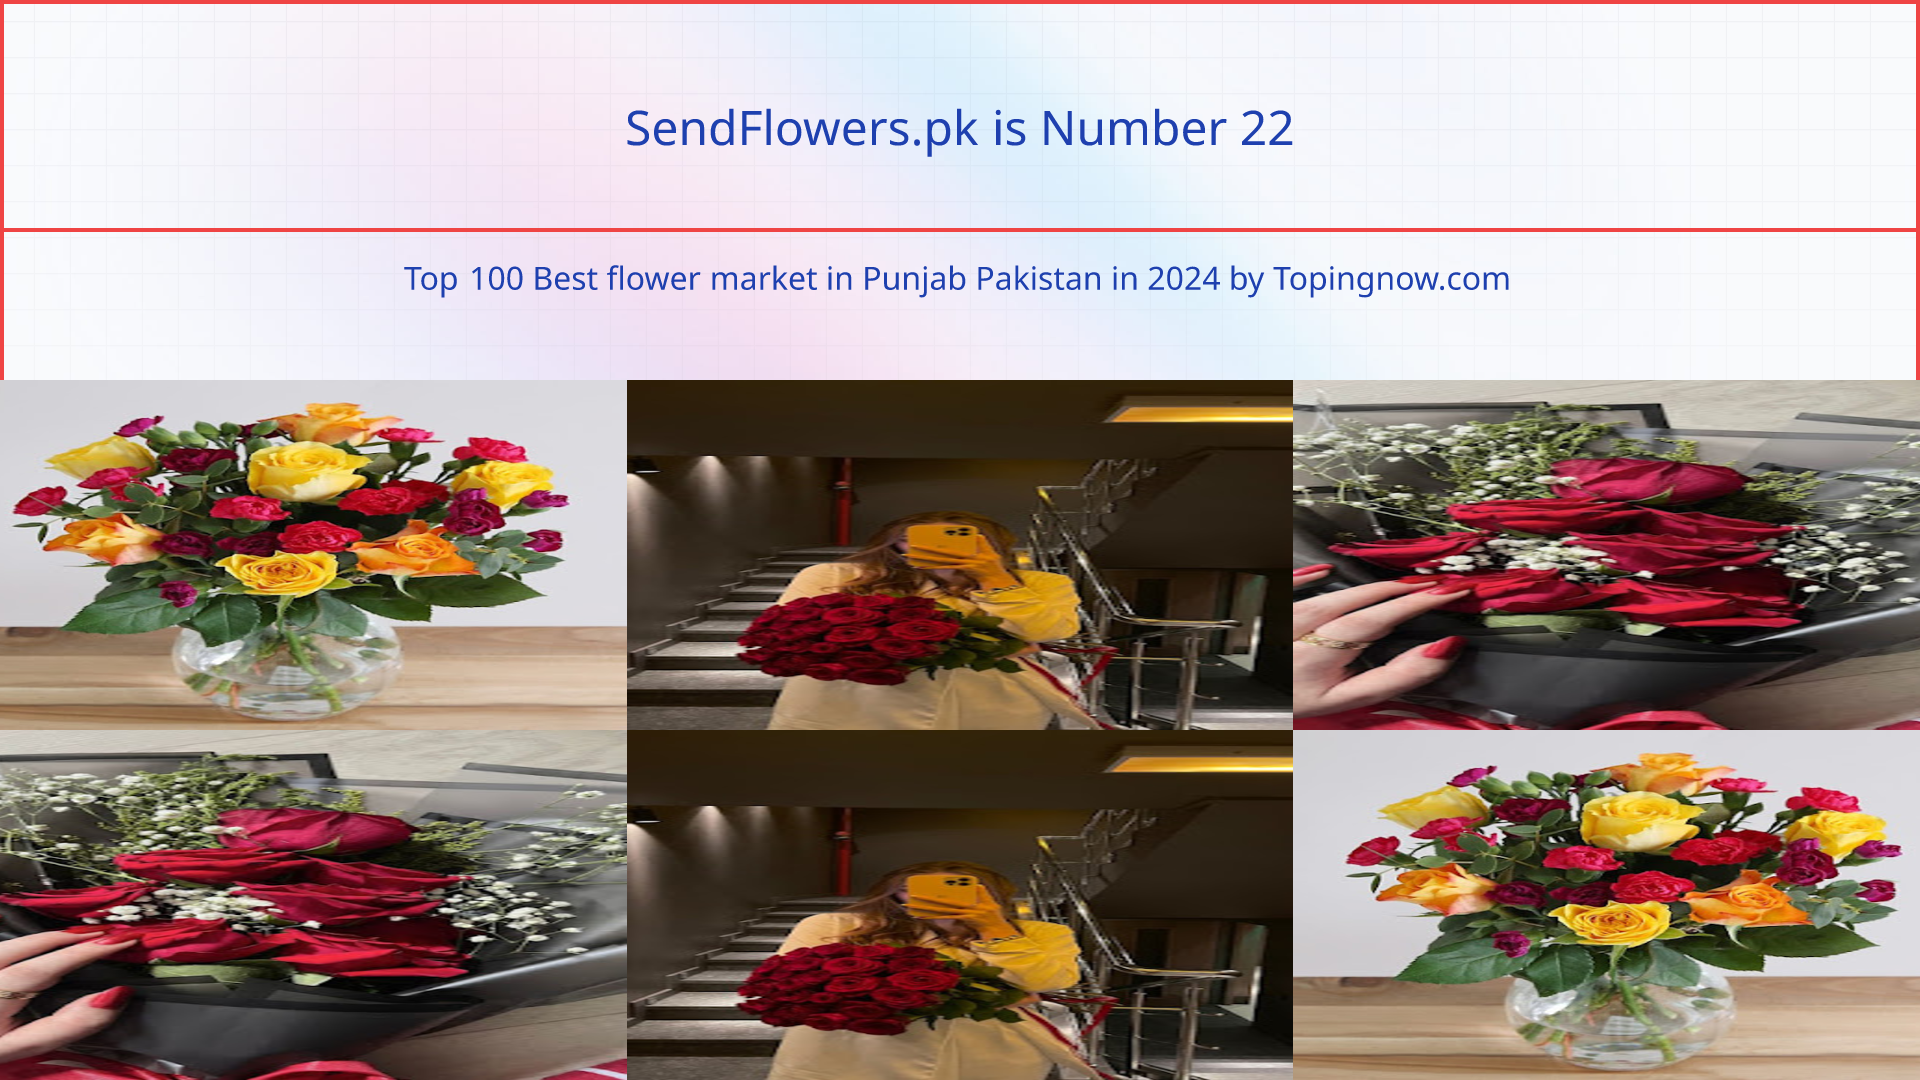 SendFlowers.pk: Top 100 Best flower market in Punjab Pakistan in 2024